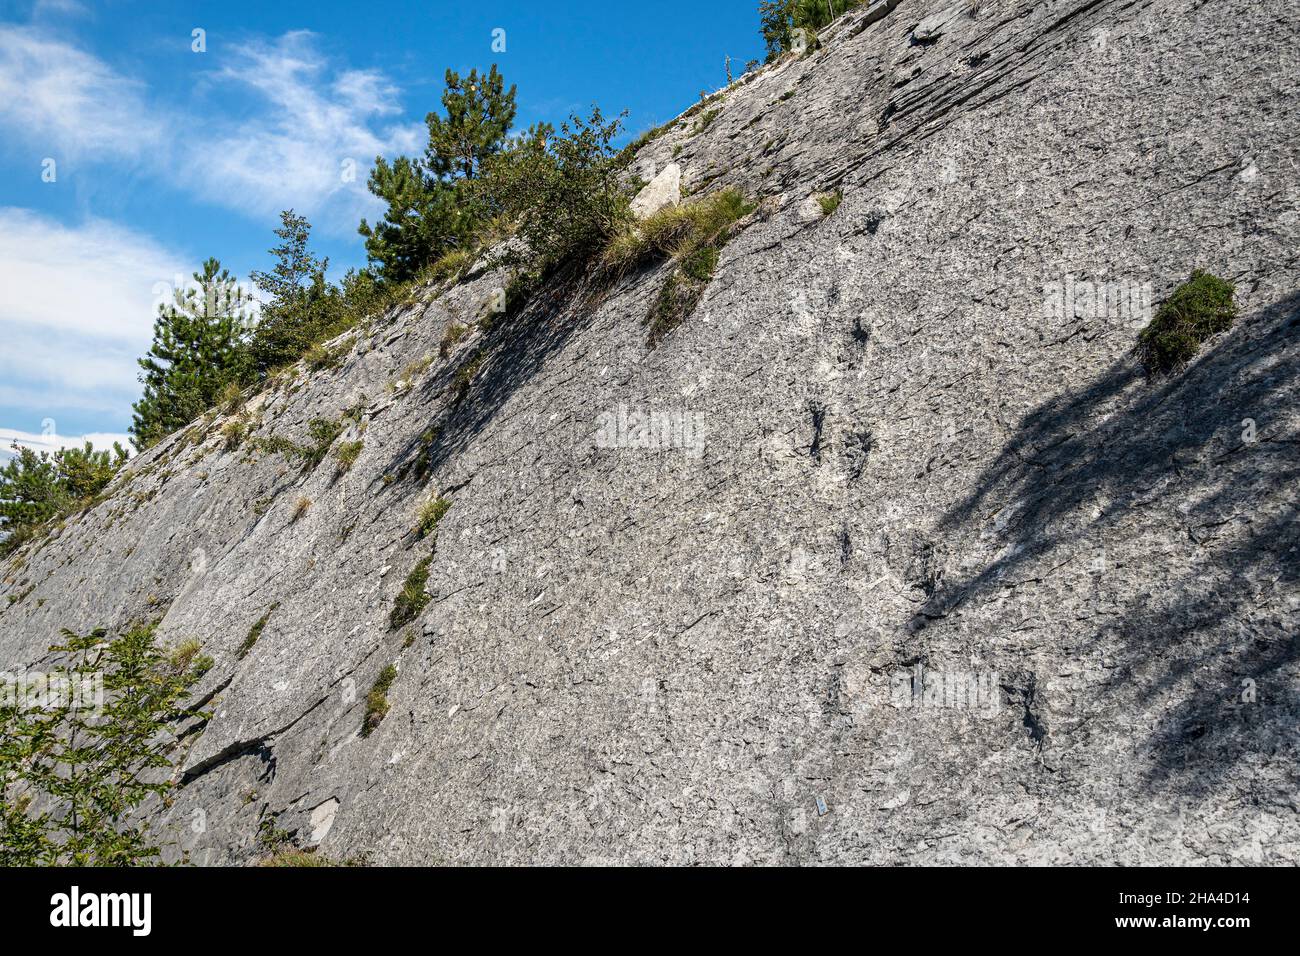 Dinosaur footprints on the rock. Dinosaur trail in Rovereto. Rovereto, Trentino Alto Adige, Italy, Europe Stock Photo